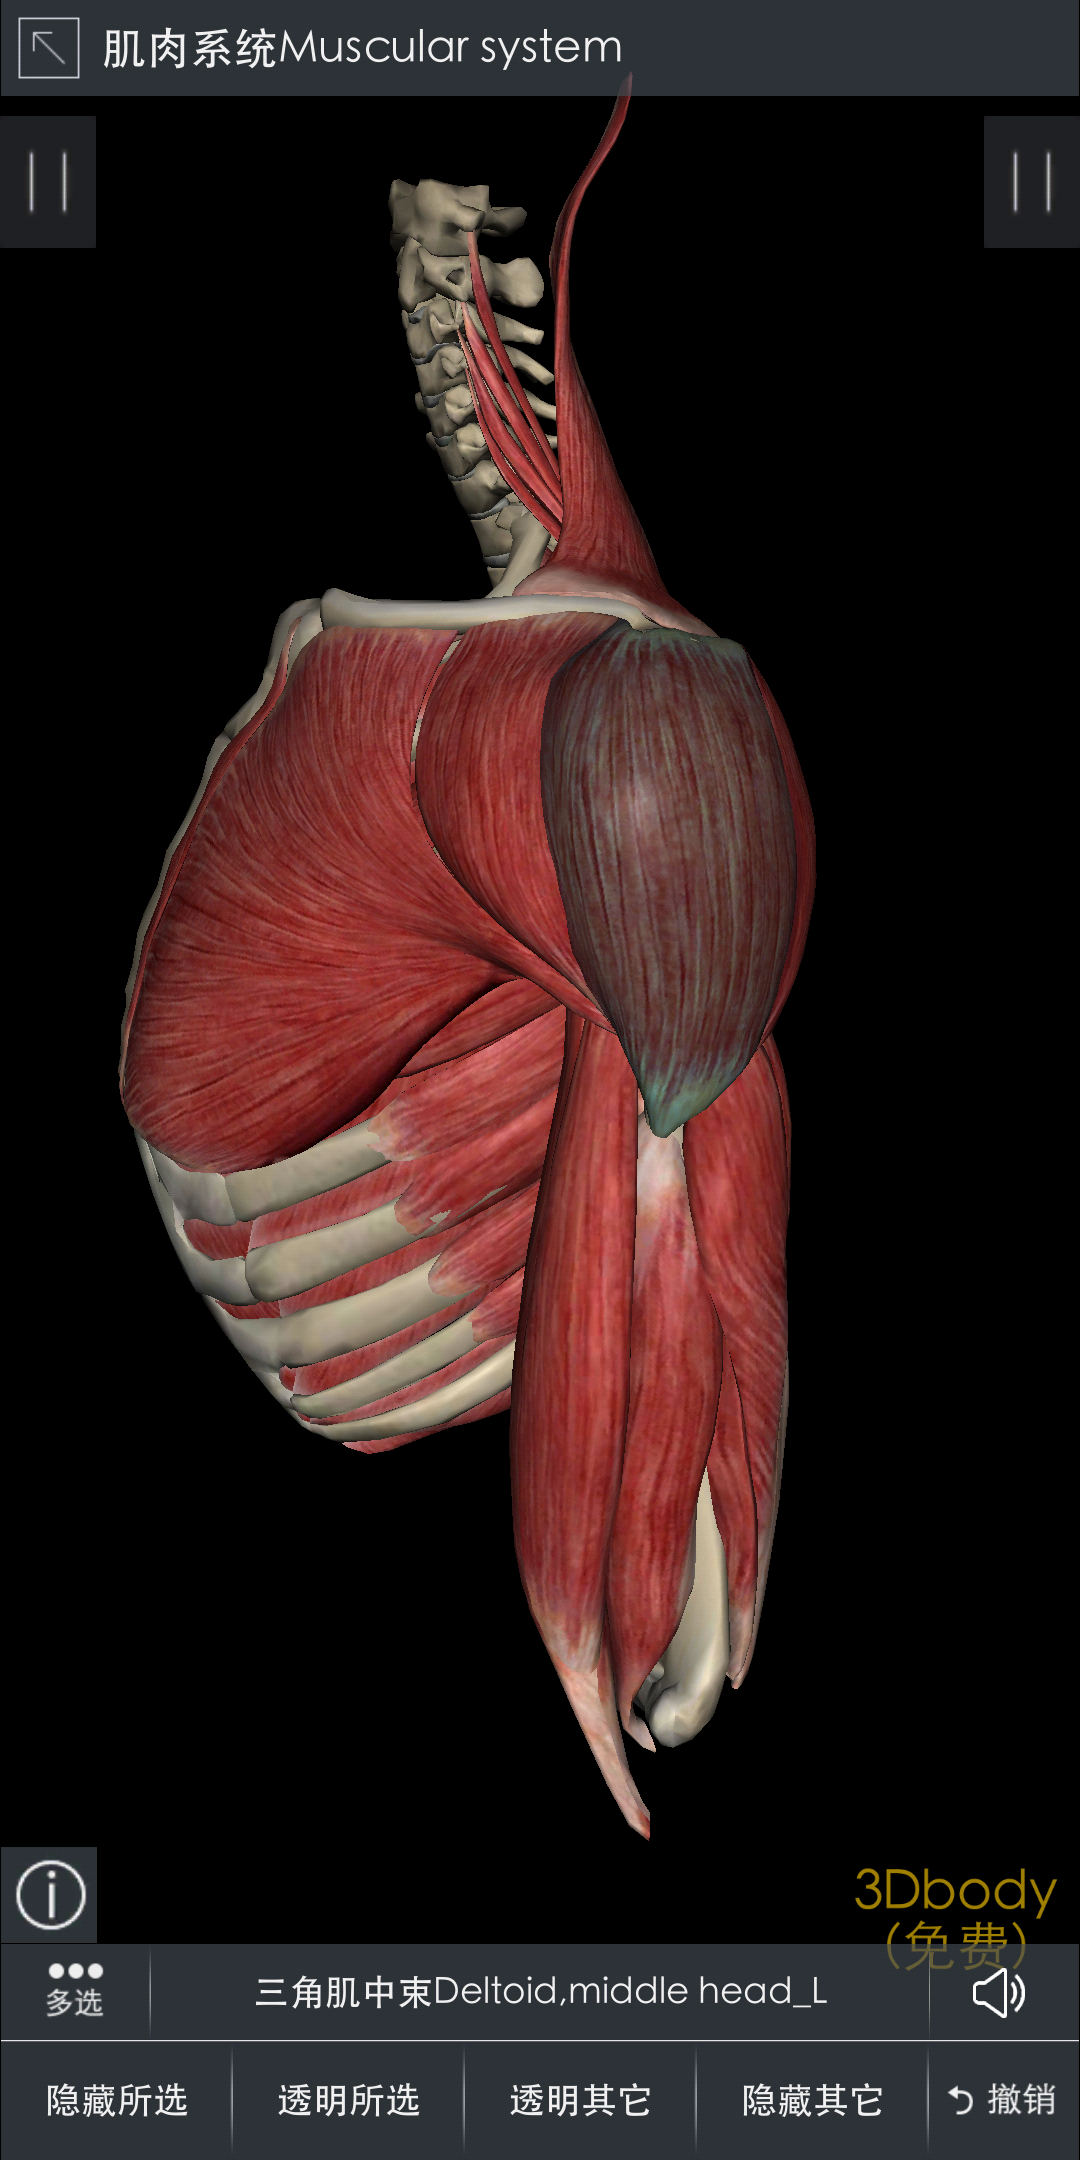 中束:三角肌中束起于锁骨外侧三分之一,肩峰,肩胛冈处,止于肱骨